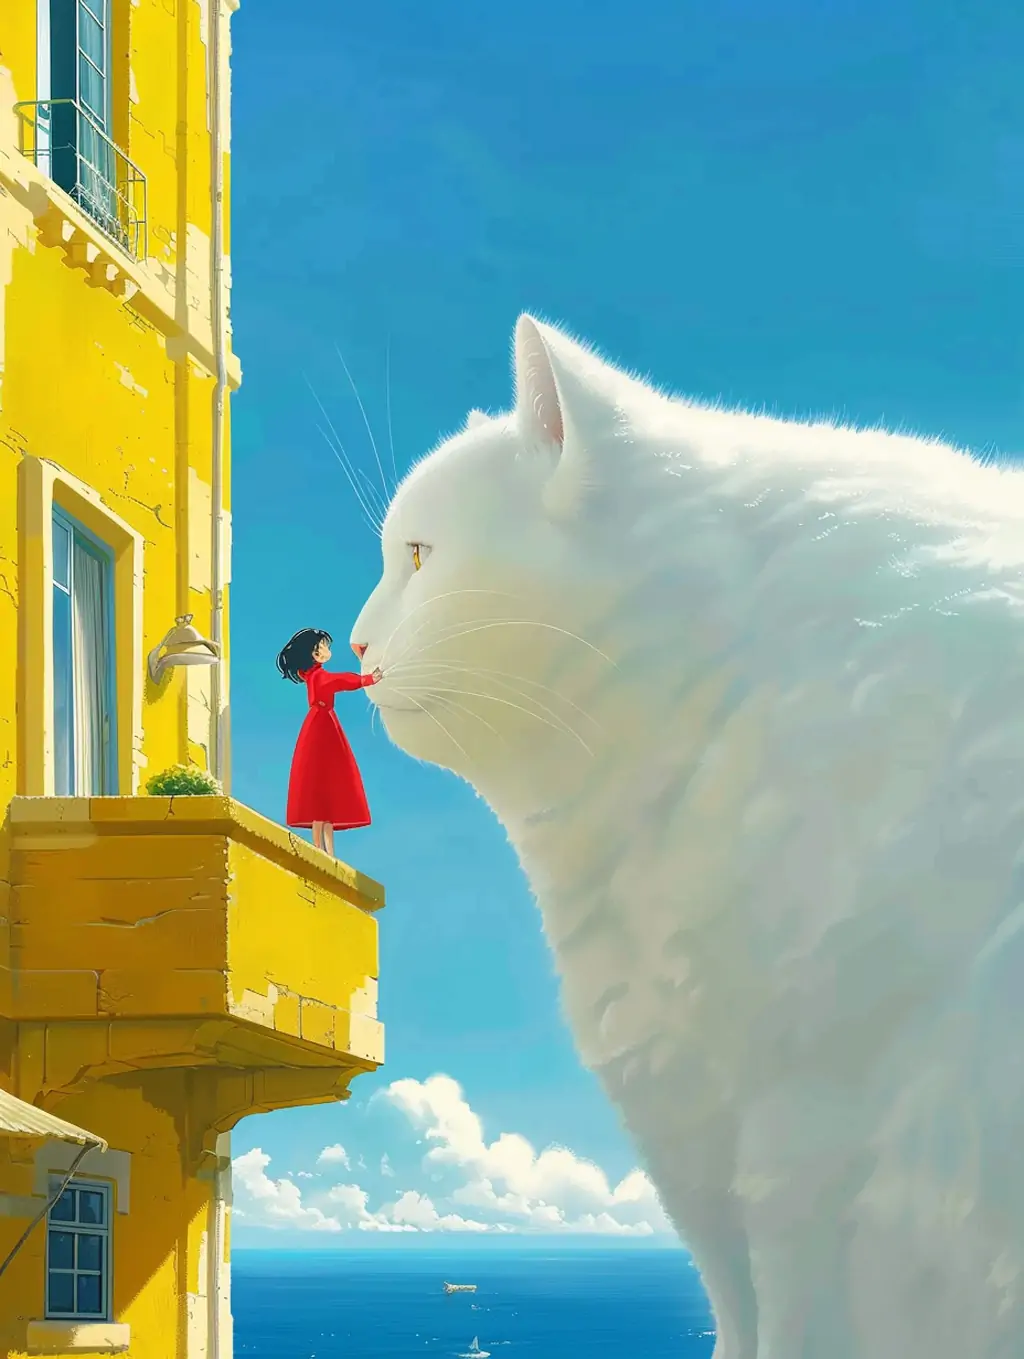 极简主义巨型白色猫咪女孩黄色建筑宫崎骏艺术风格插图海报midjourney关键词咒语 - Ai宇宙吧--Ai宇宙吧-